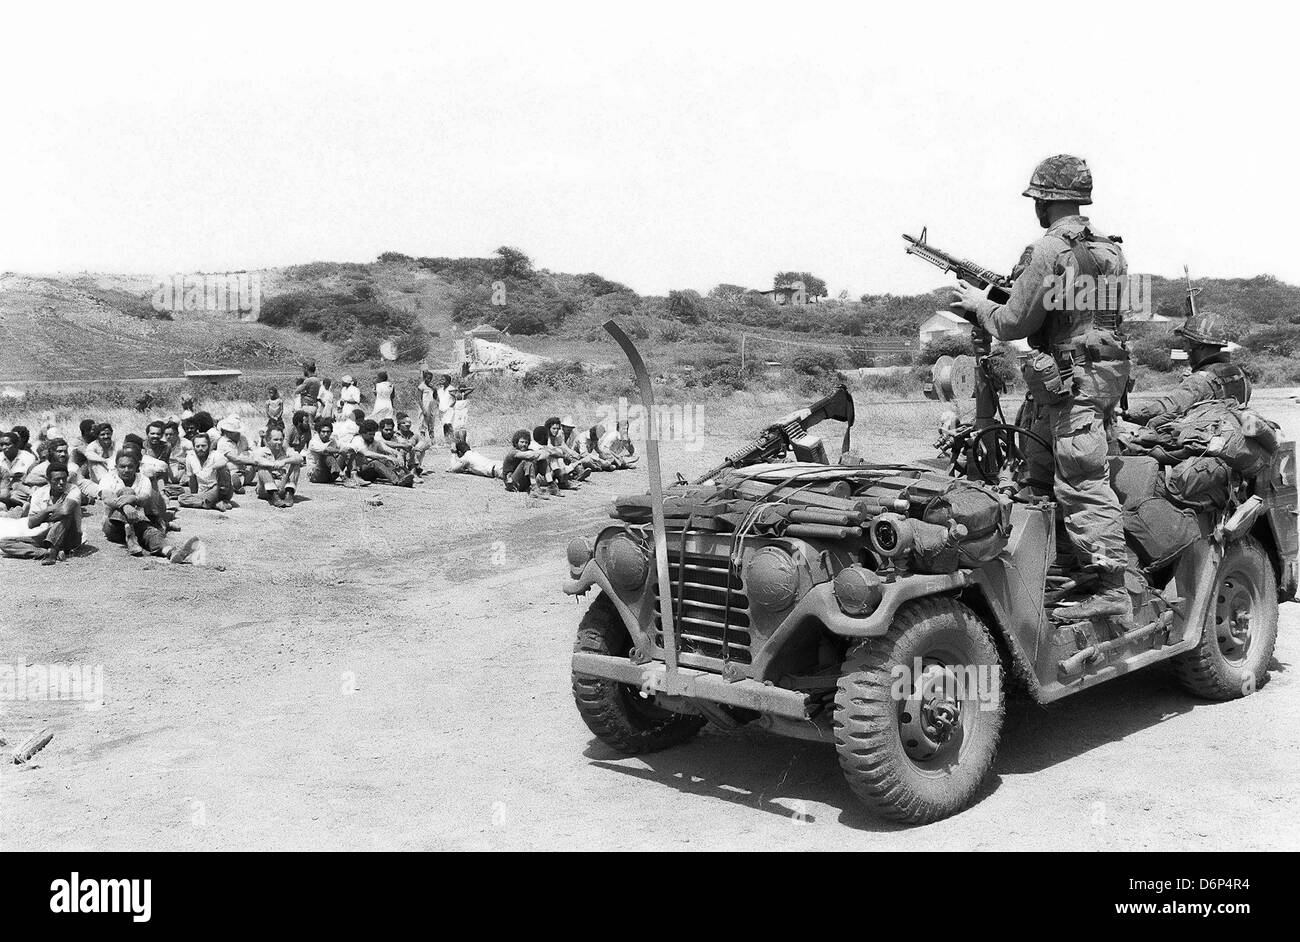 US-Marines bewachen aufgenommene Mitglied der Völker revolutionäre Armee während der Invasion von Grenada, unter dem Codenamen Operation Urgent Fury 25. Oktober 1983 in St. Georges, Grenada. Die Invasion begann am 25. Oktober 1983 und wurde die erste größere militärische Aktion von den Vereinigten Staaten seit dem Ende des Vietnam-Krieges. Stockfoto